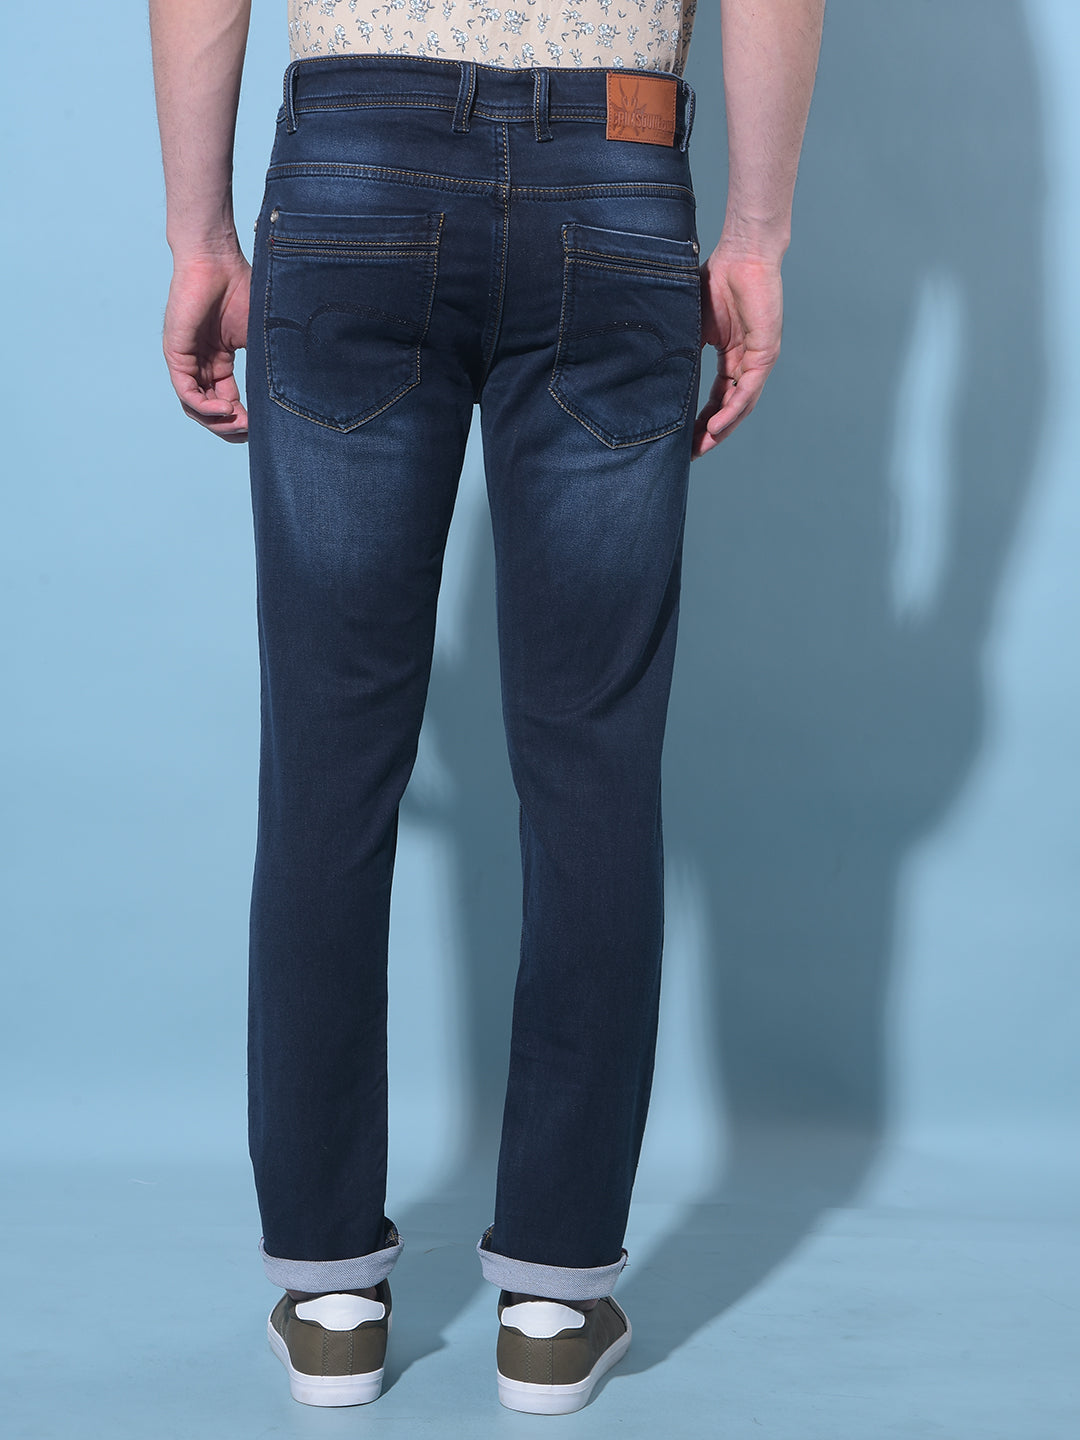 Navy Blue Stretchable Cotton Jeans-Men Jeans-Crimsoune Club